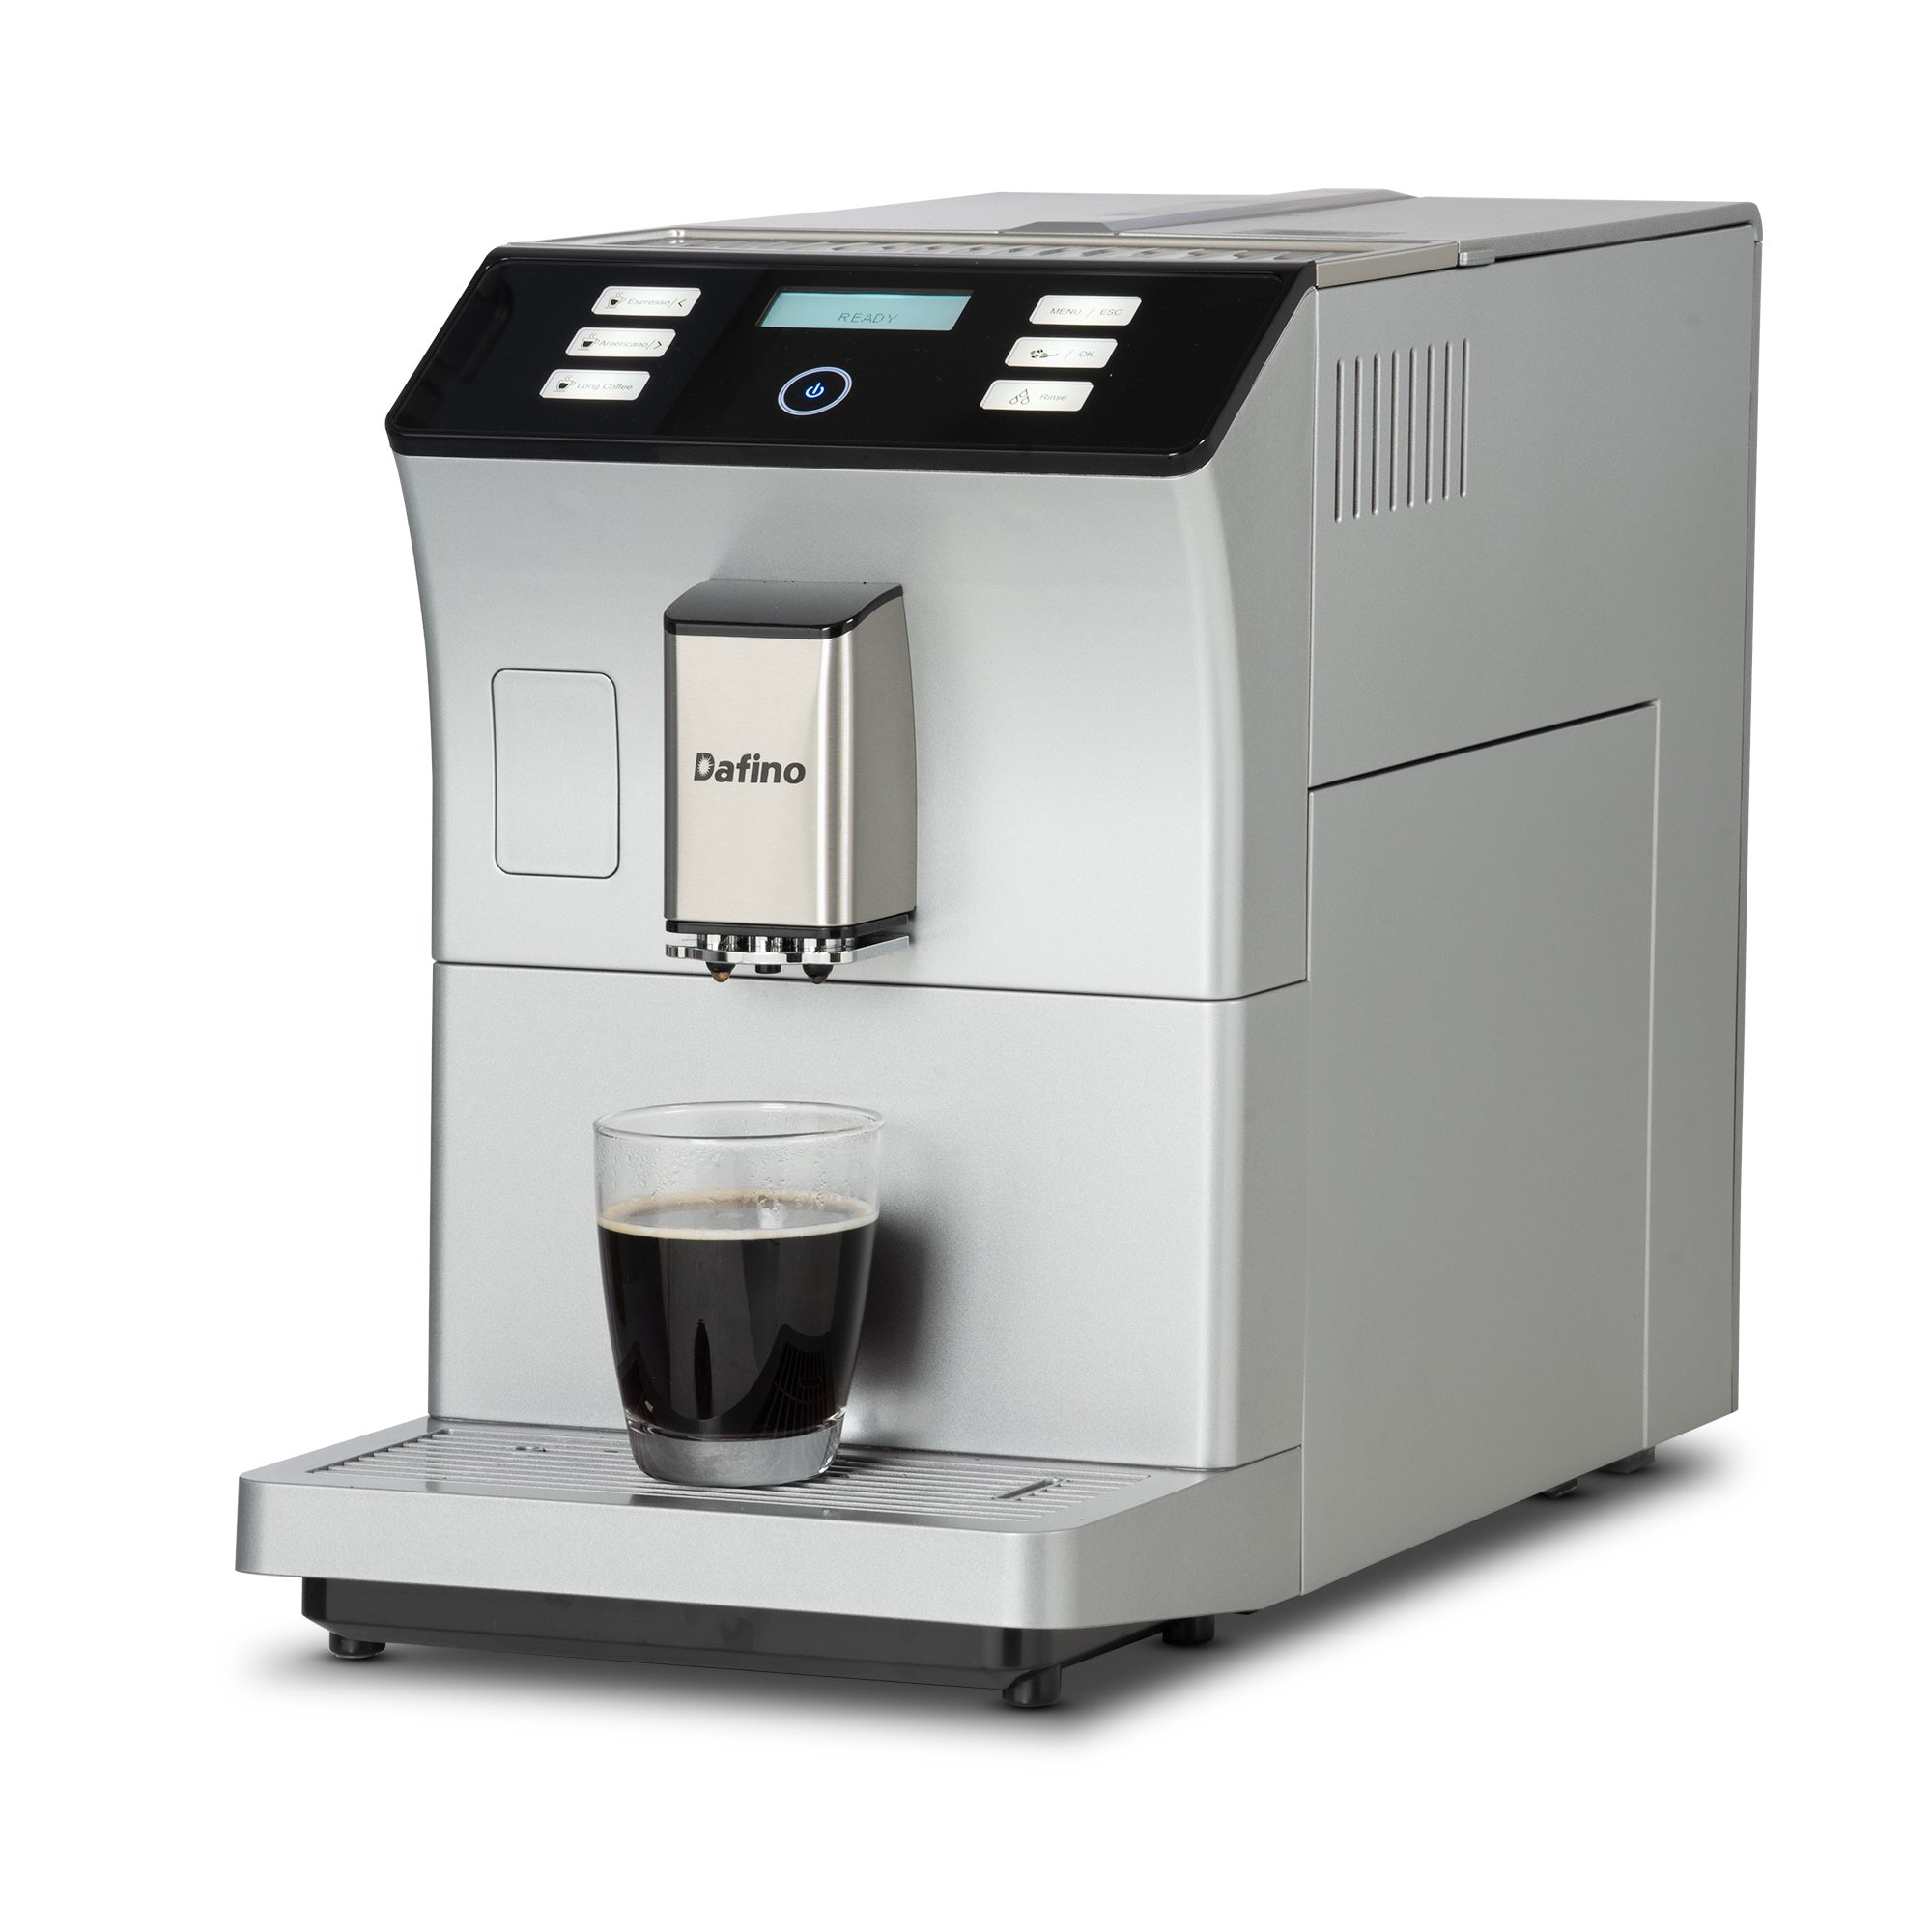 Dafino-206 Super Automatic Espresso & Coffee Maker Machine;  Black